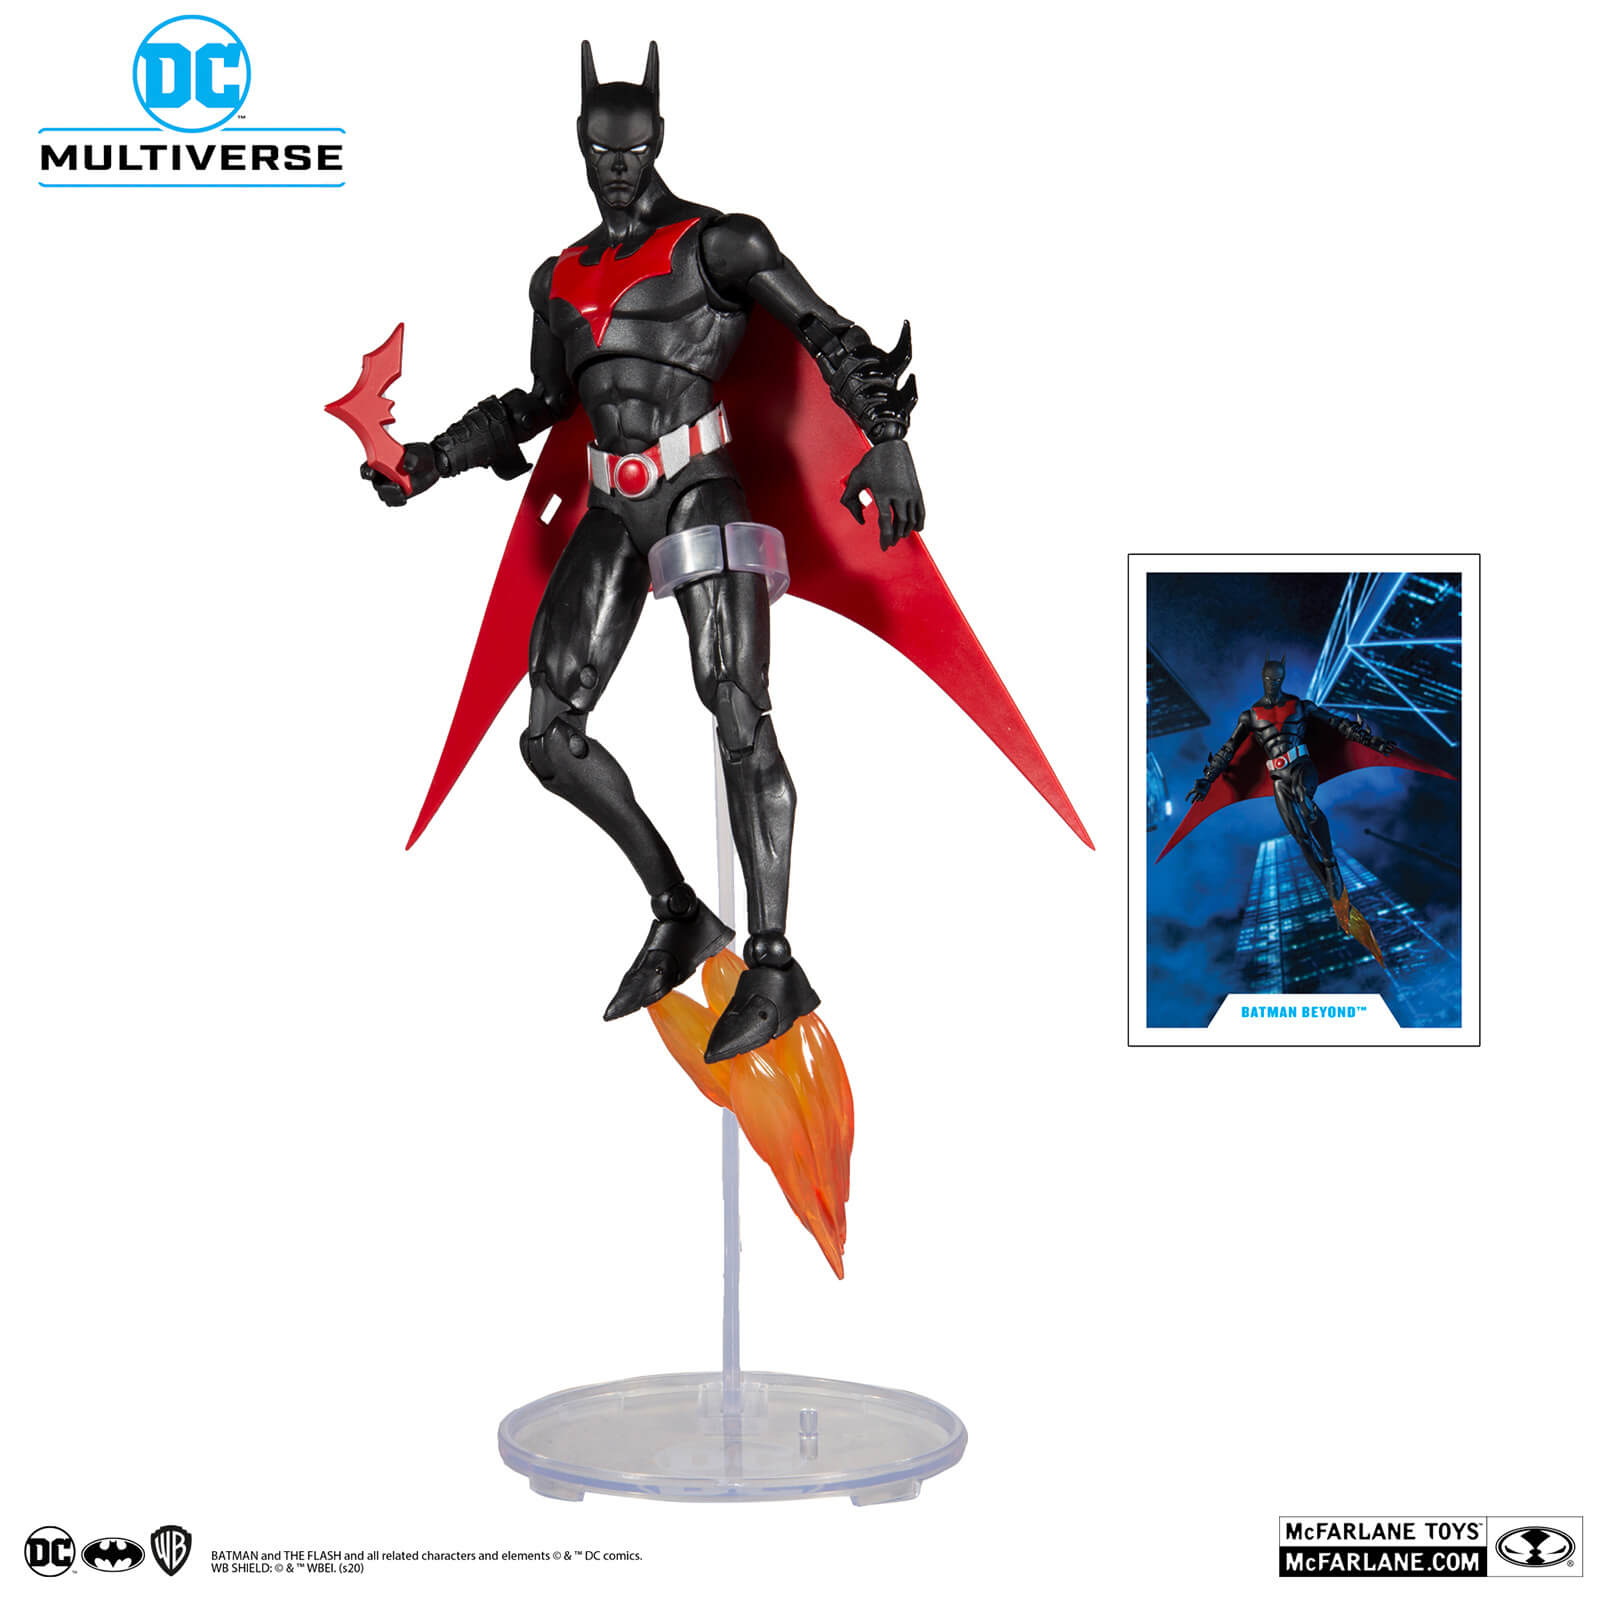 McFarlane Toys DC Multiverse 7  - Batman (Batman Beyond) Action Figure